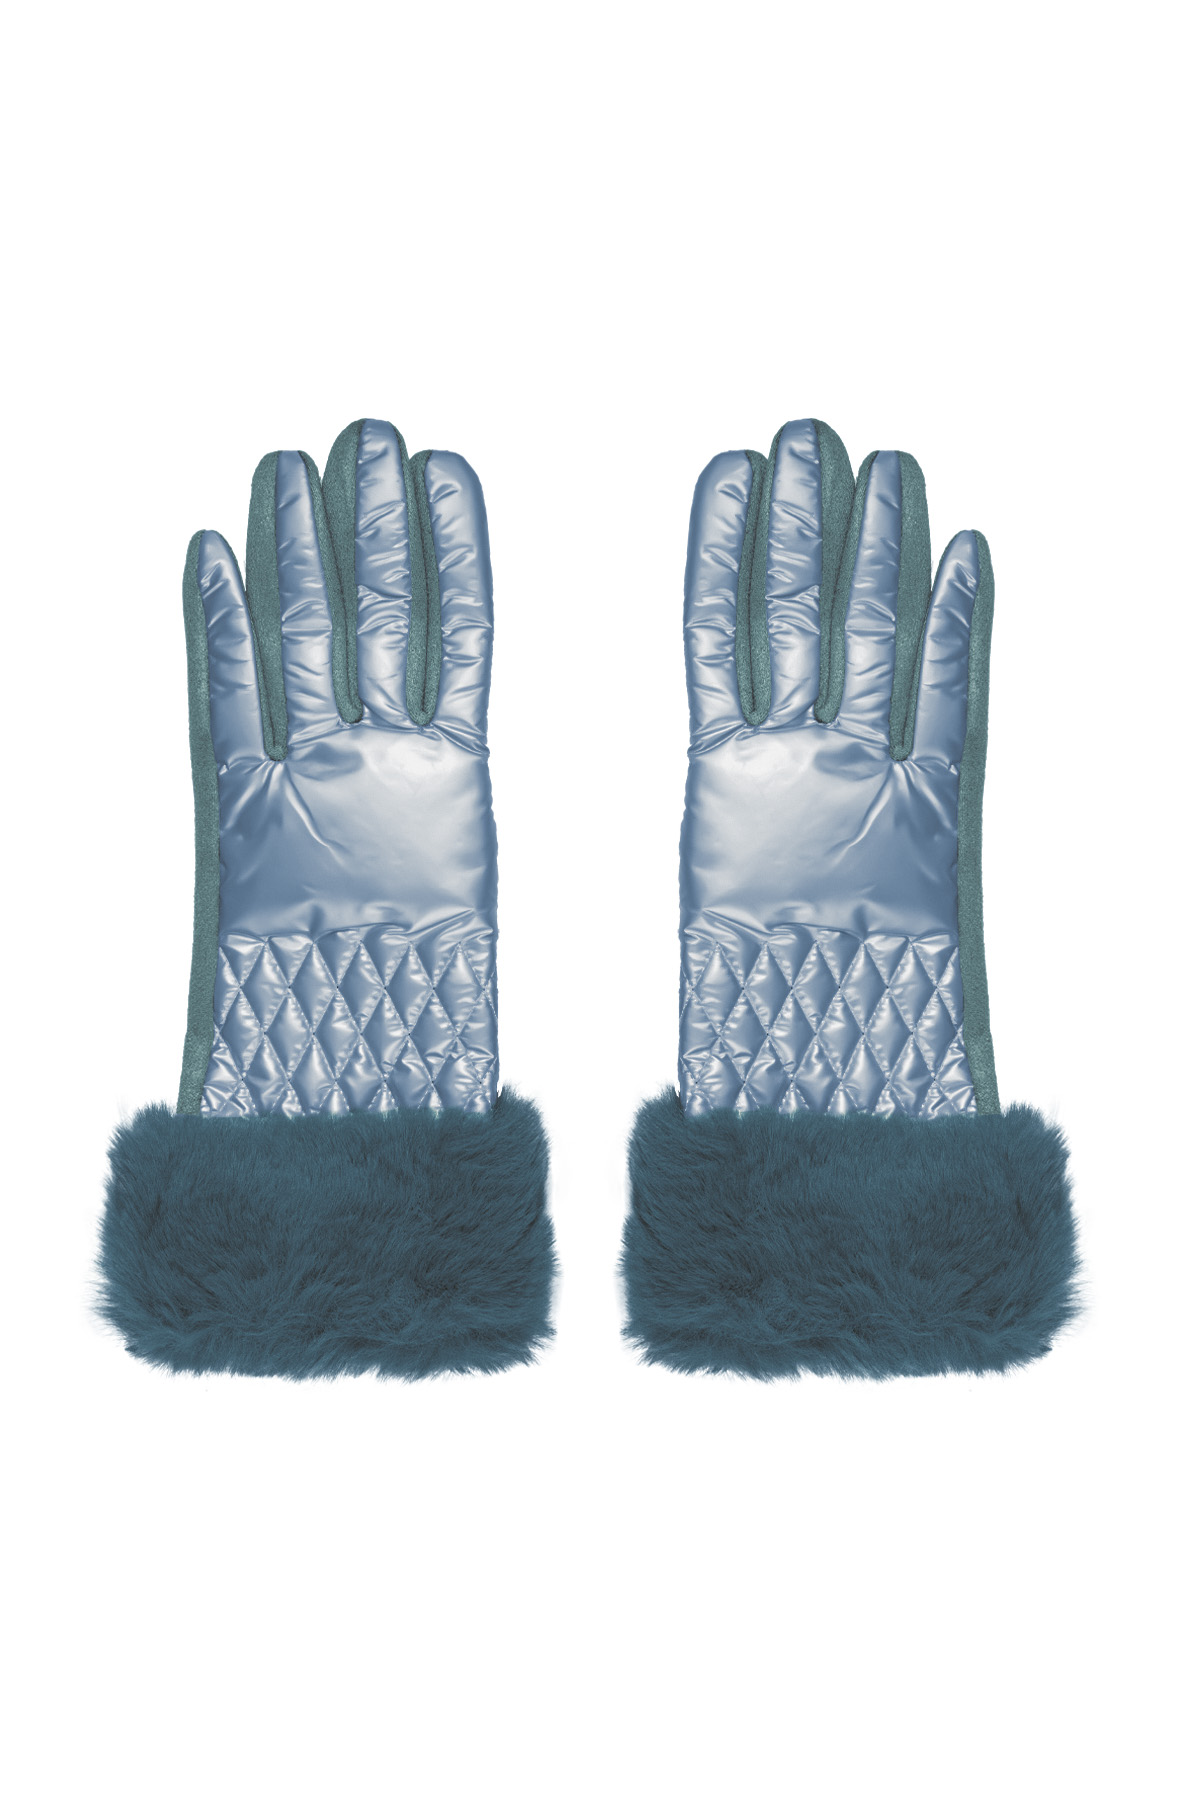 Handschuhe mit Kunstpelzbesatz - blau h5 